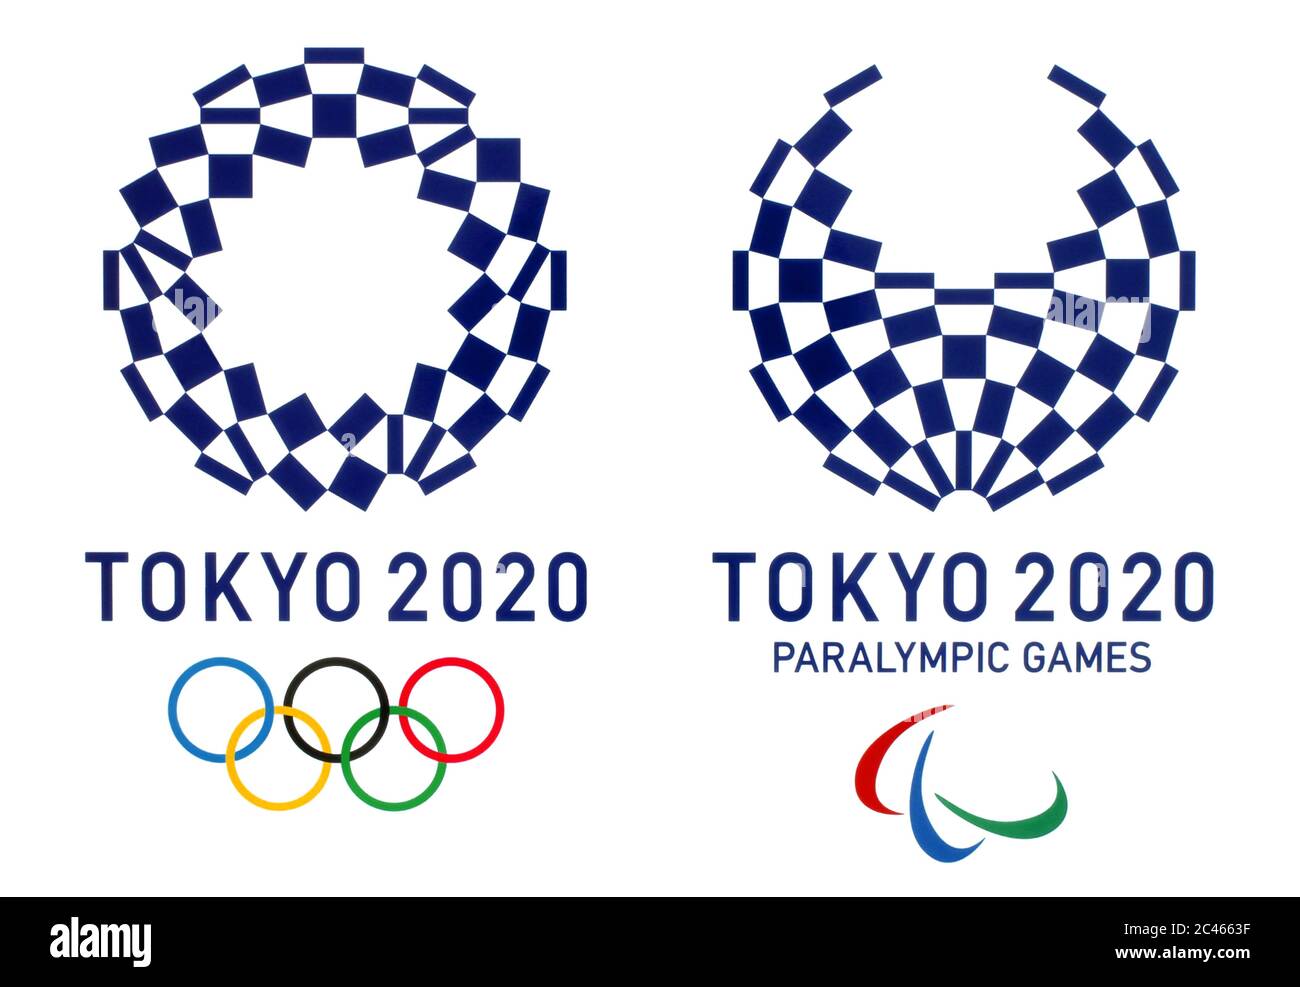 Kiev, Ucraina - 13 febbraio 2019: Loghi ufficiali dei Giochi Olimpici estivi 2020 a Tokyo, Giappone, dal 24 luglio al 9 agosto 2020, stampati su carta Foto Stock